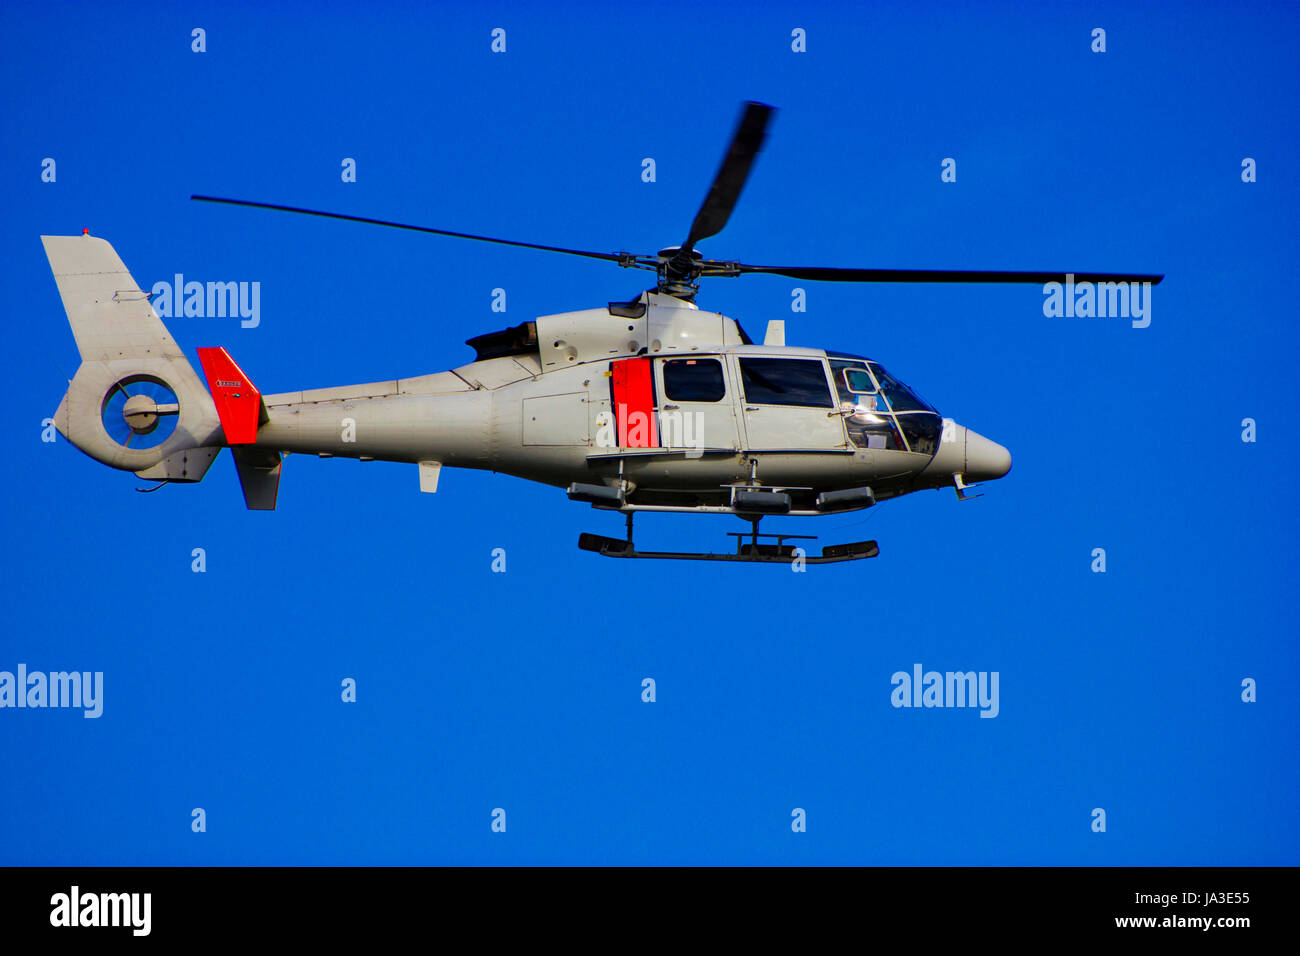 Turbine helicopter immagini e fotografie stock ad alta risoluzione - Alamy